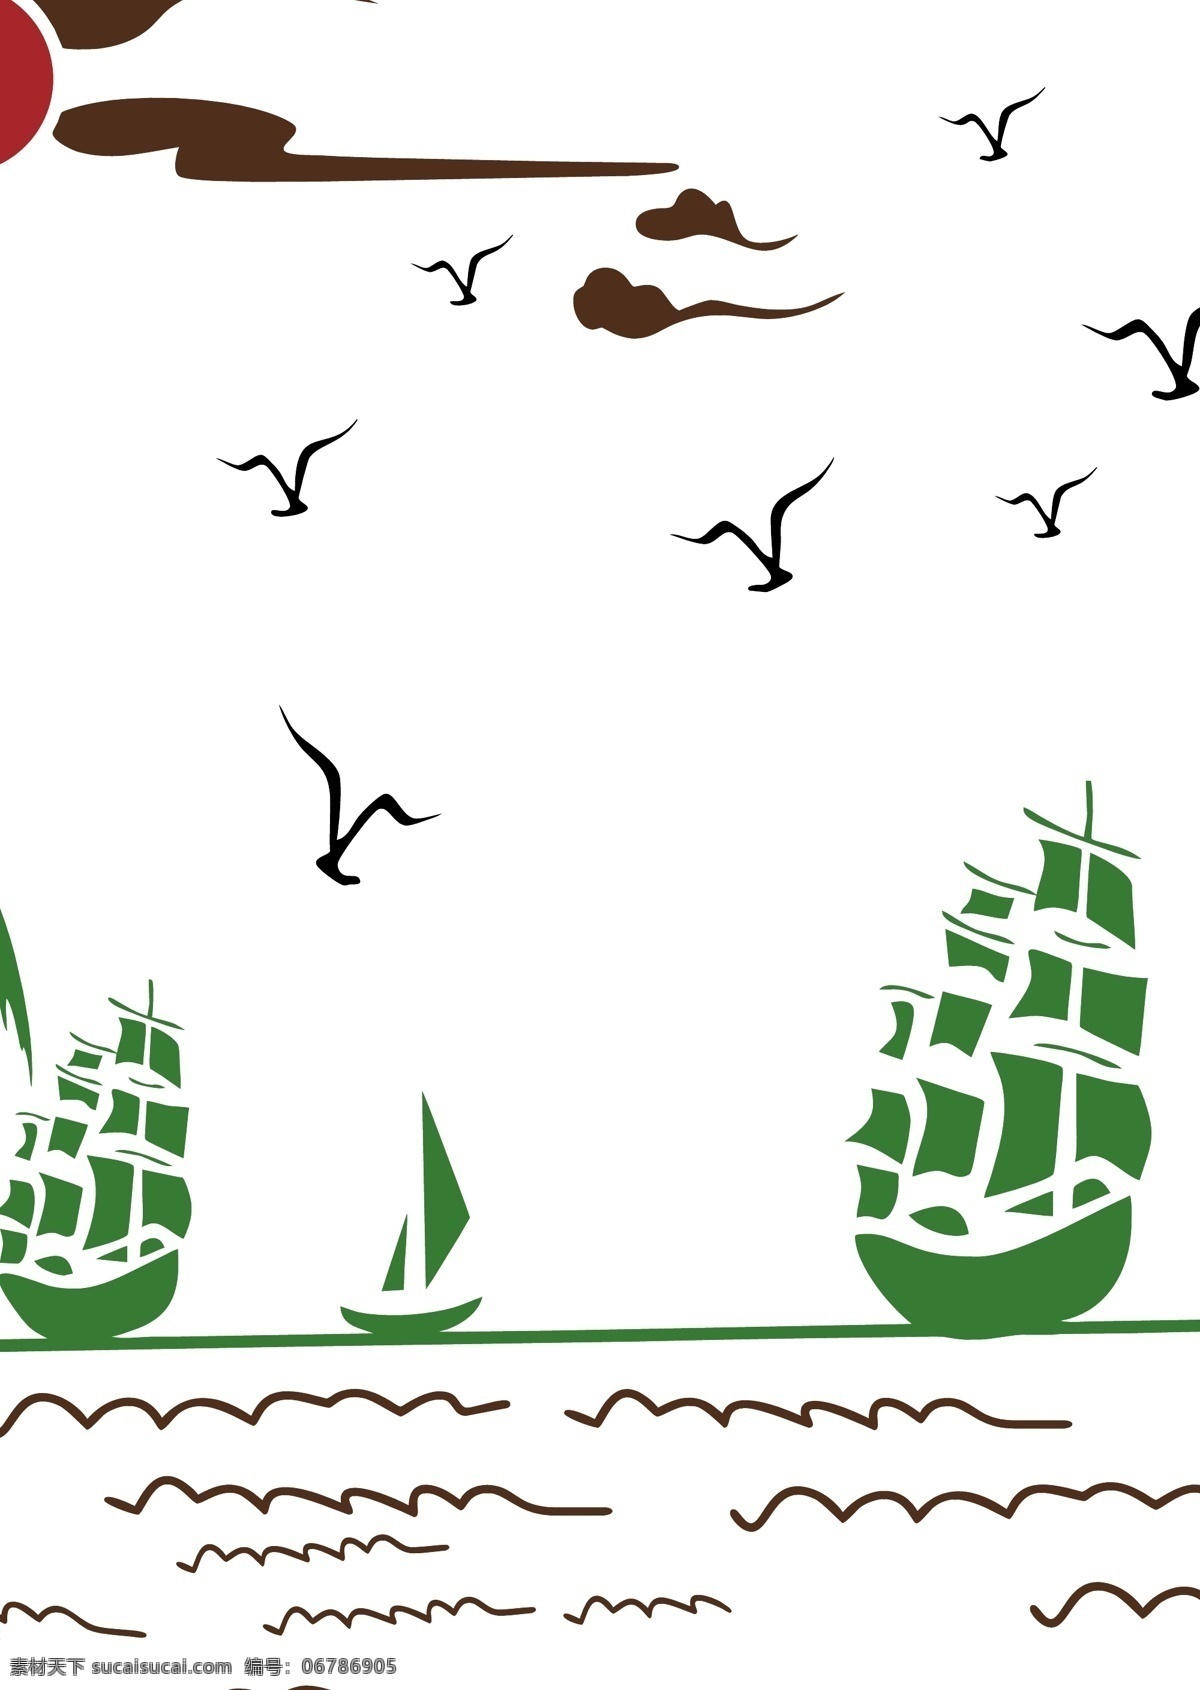 海边 椰树 风景 矢量图 风景图 硅藻泥刻绘图 丝网 模具 船 白色